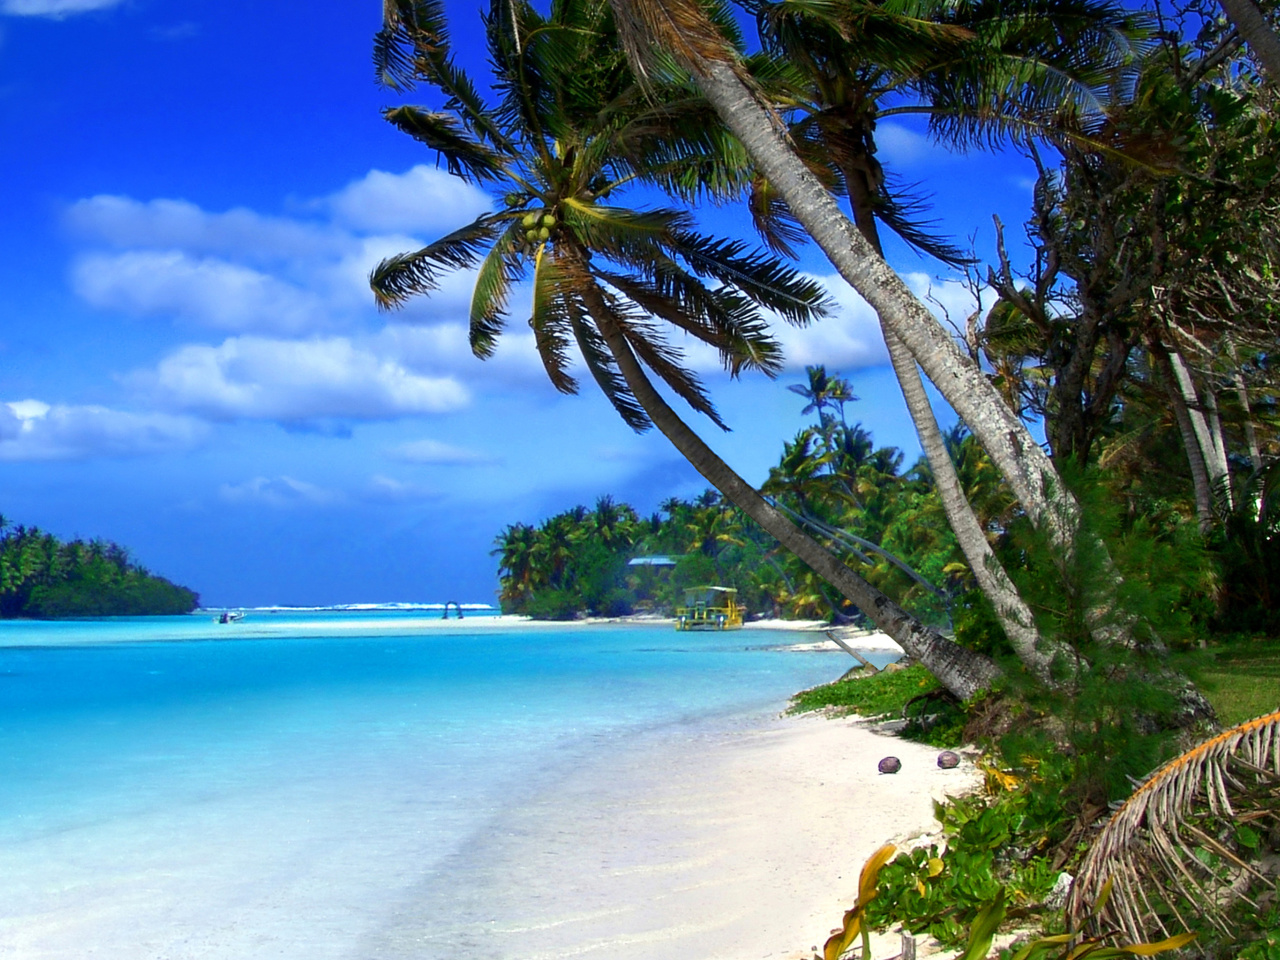 Обои Beach on Cayman Islands 1280x960